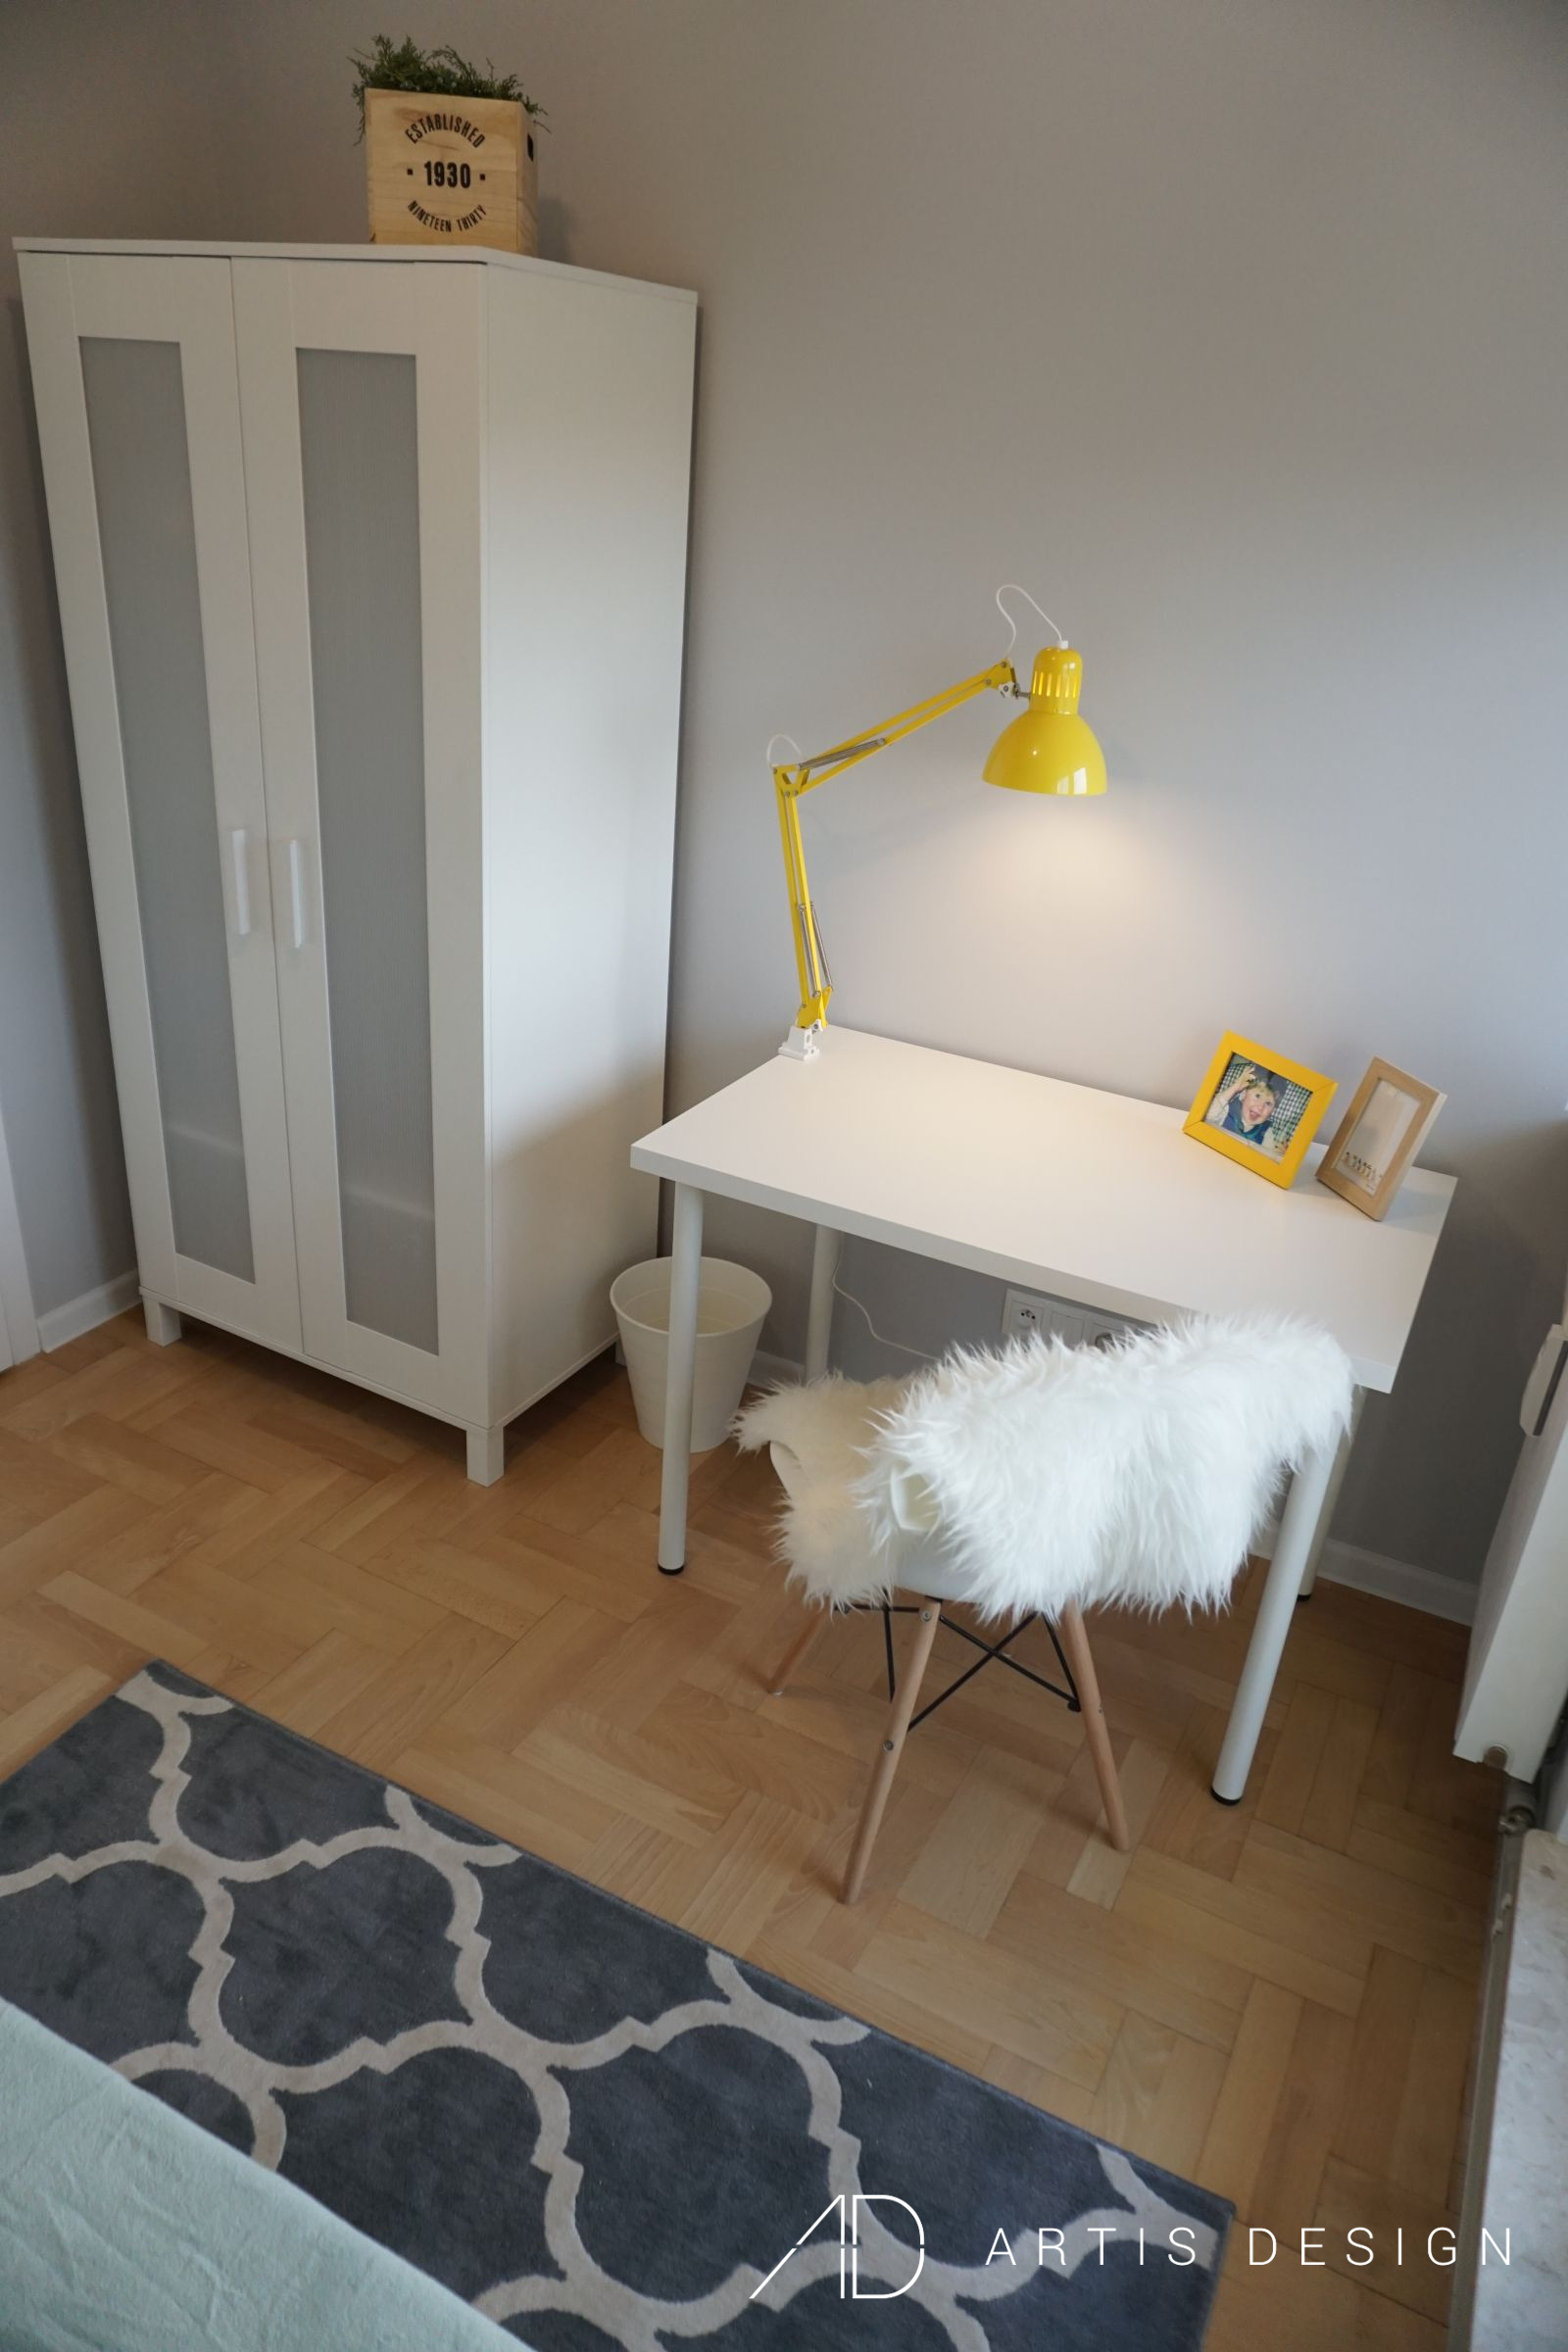 Projekt: Mieszkanie do wynajęcia w stylu skandynawskim | Artis Design: Studio projektowe